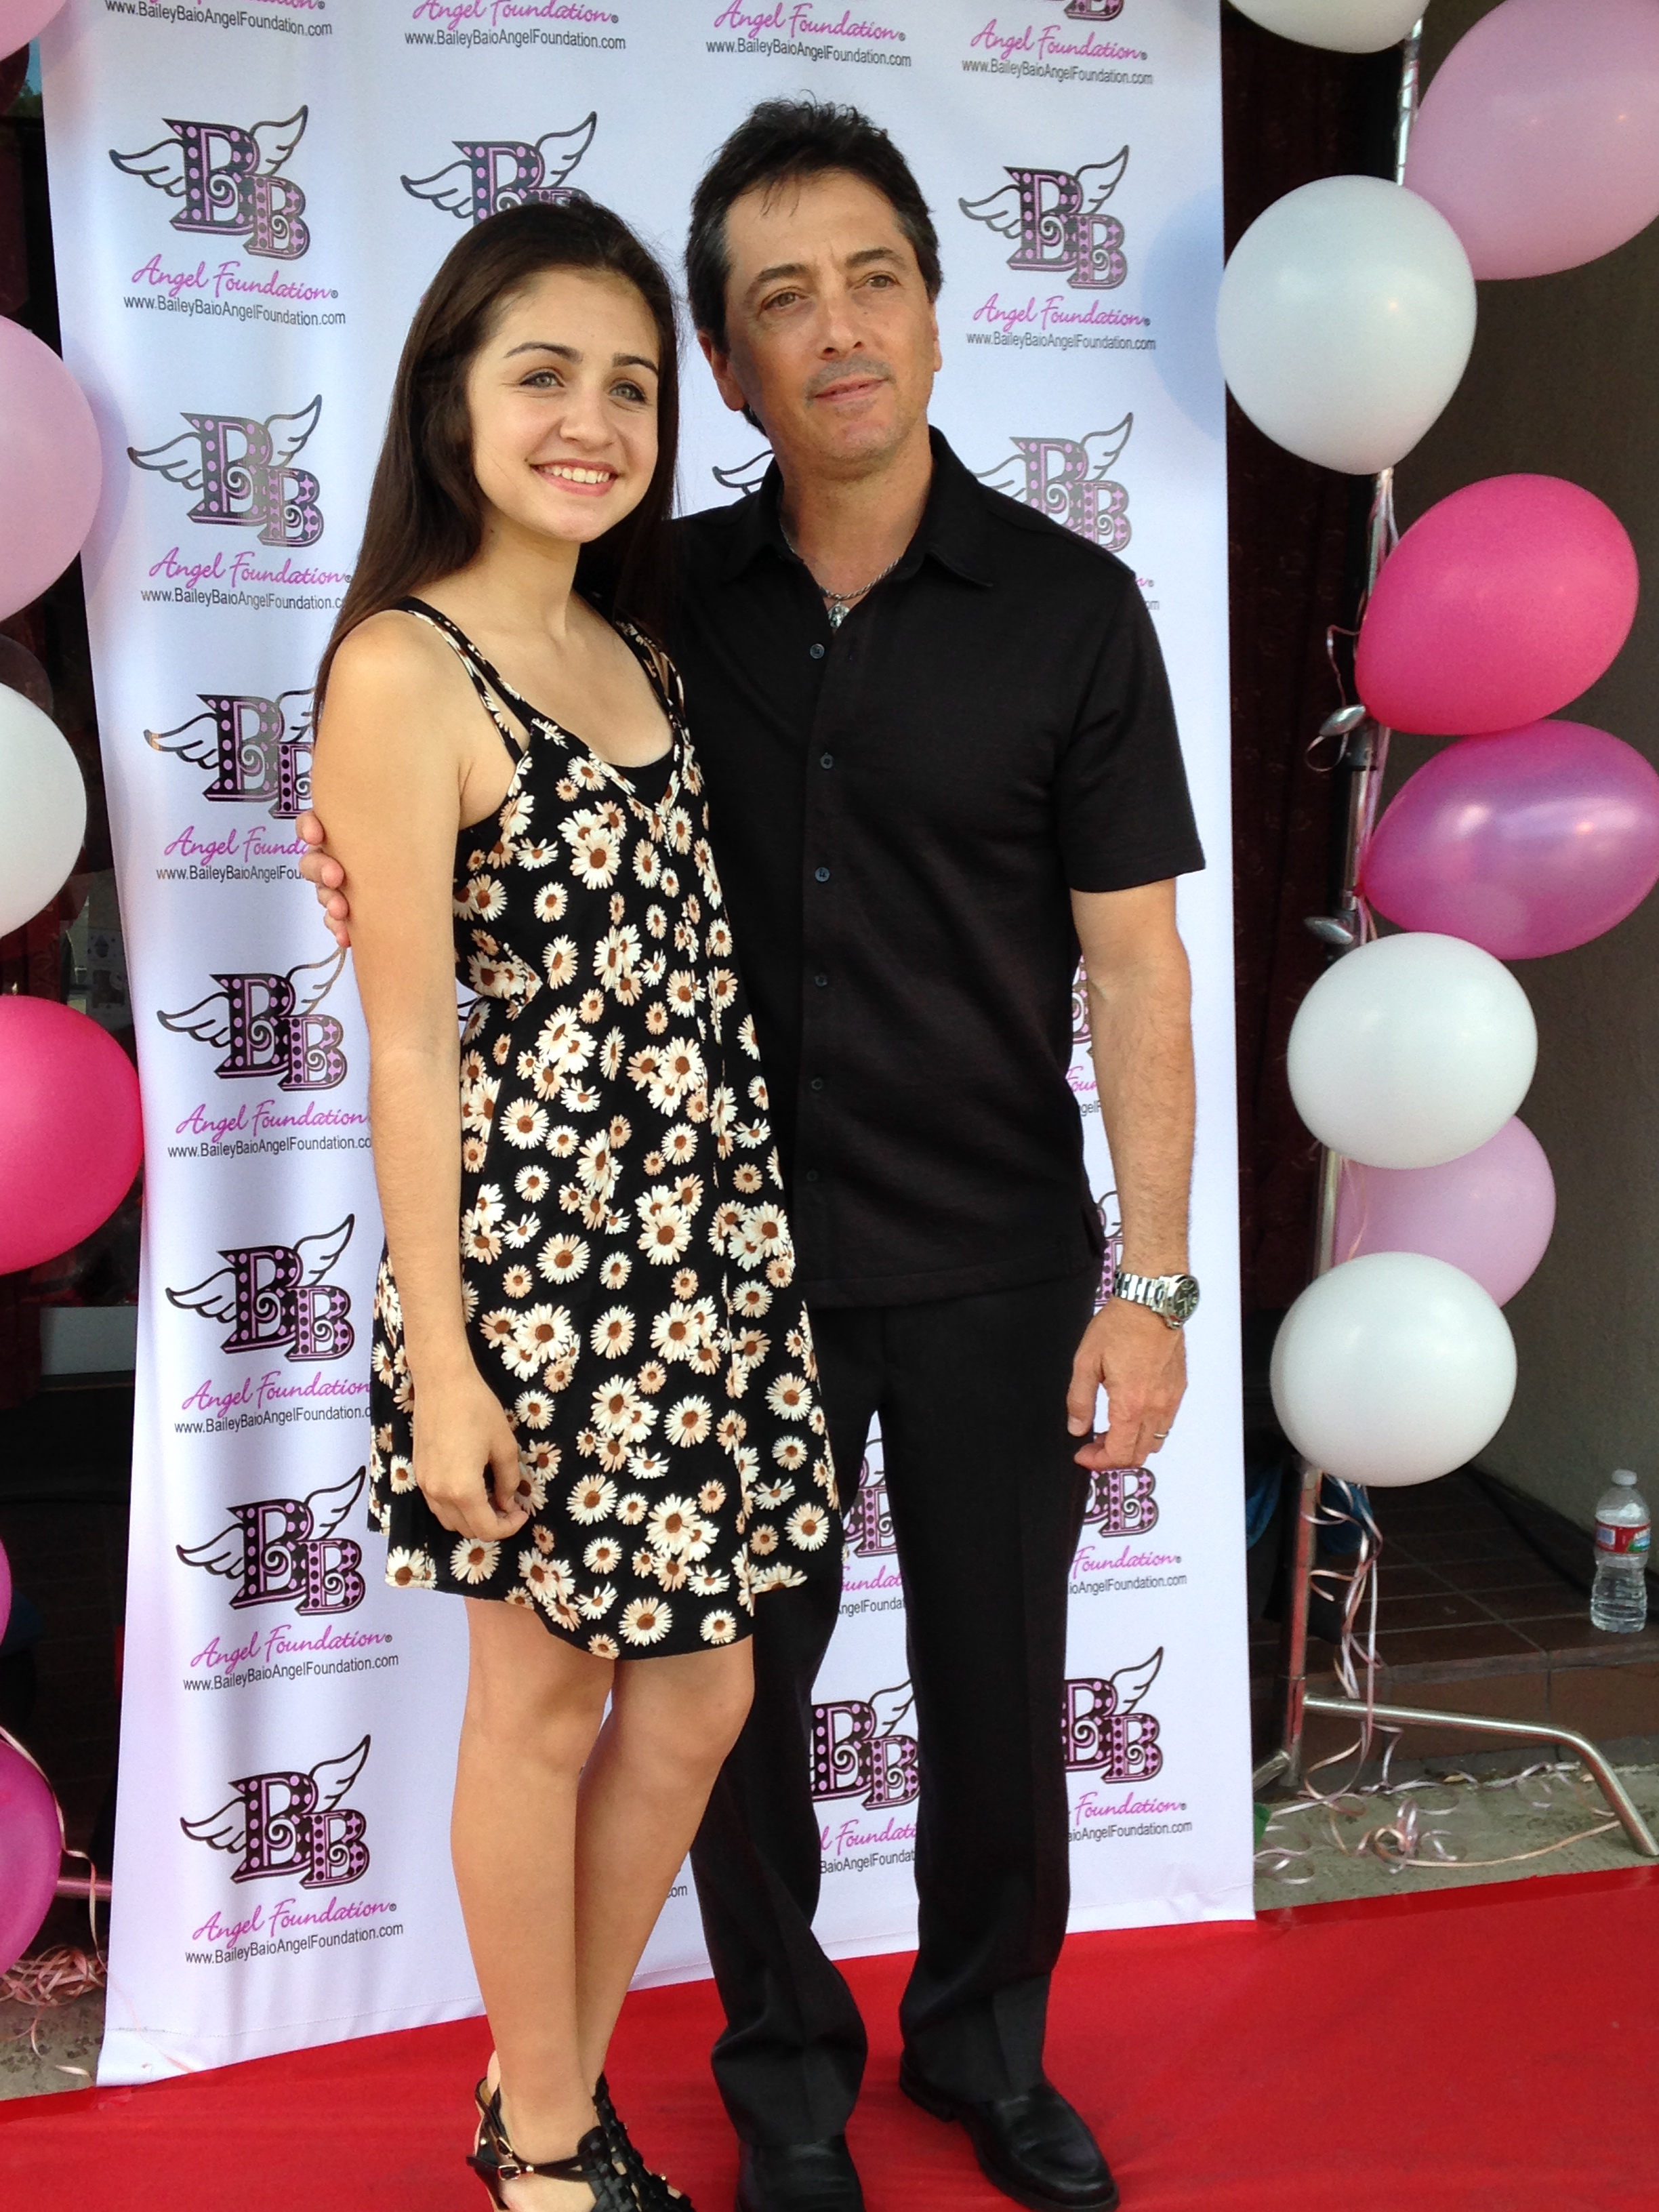 Samantha Elizondo with Scott Baio at Scott's party.